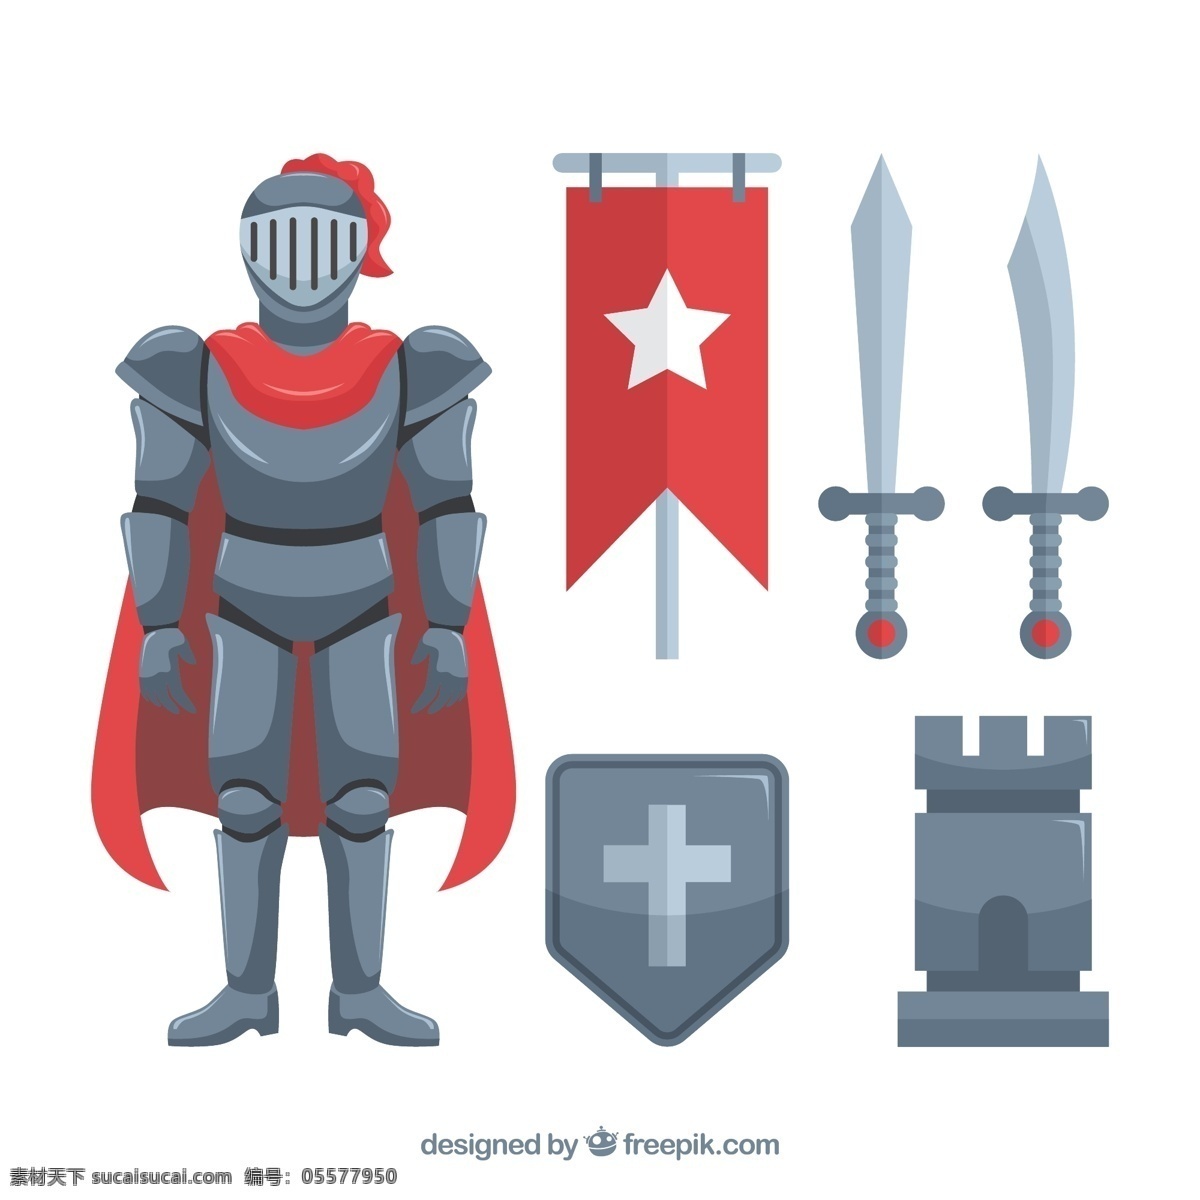 矢量图 矢量素材 中世纪 扁平 骑士 元素 中世纪骑士 扁平骑士 人物 刀剑